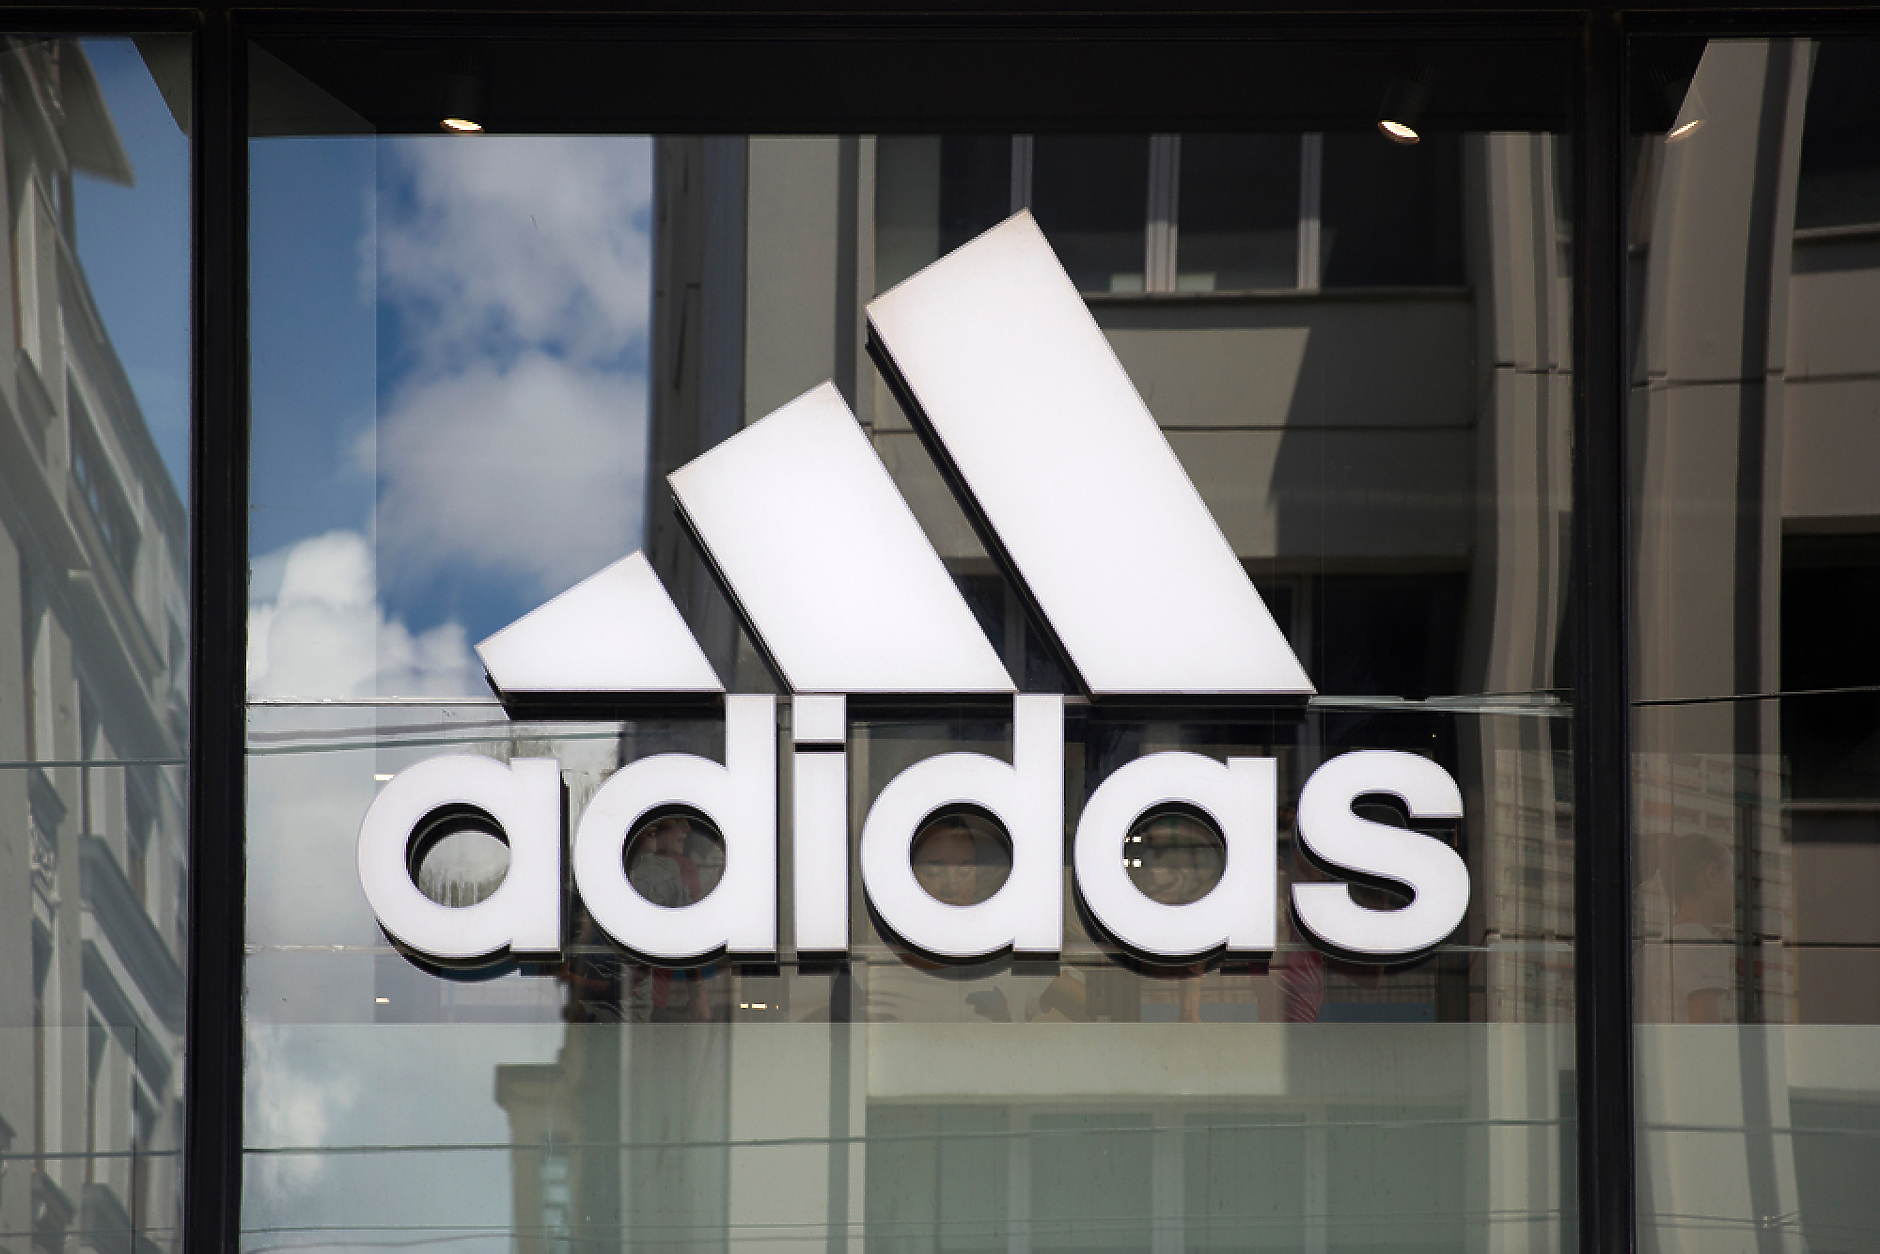 Adidas възропта срещу дизайна на Black Lives Matter, нарушавал търговската марка с три ивици